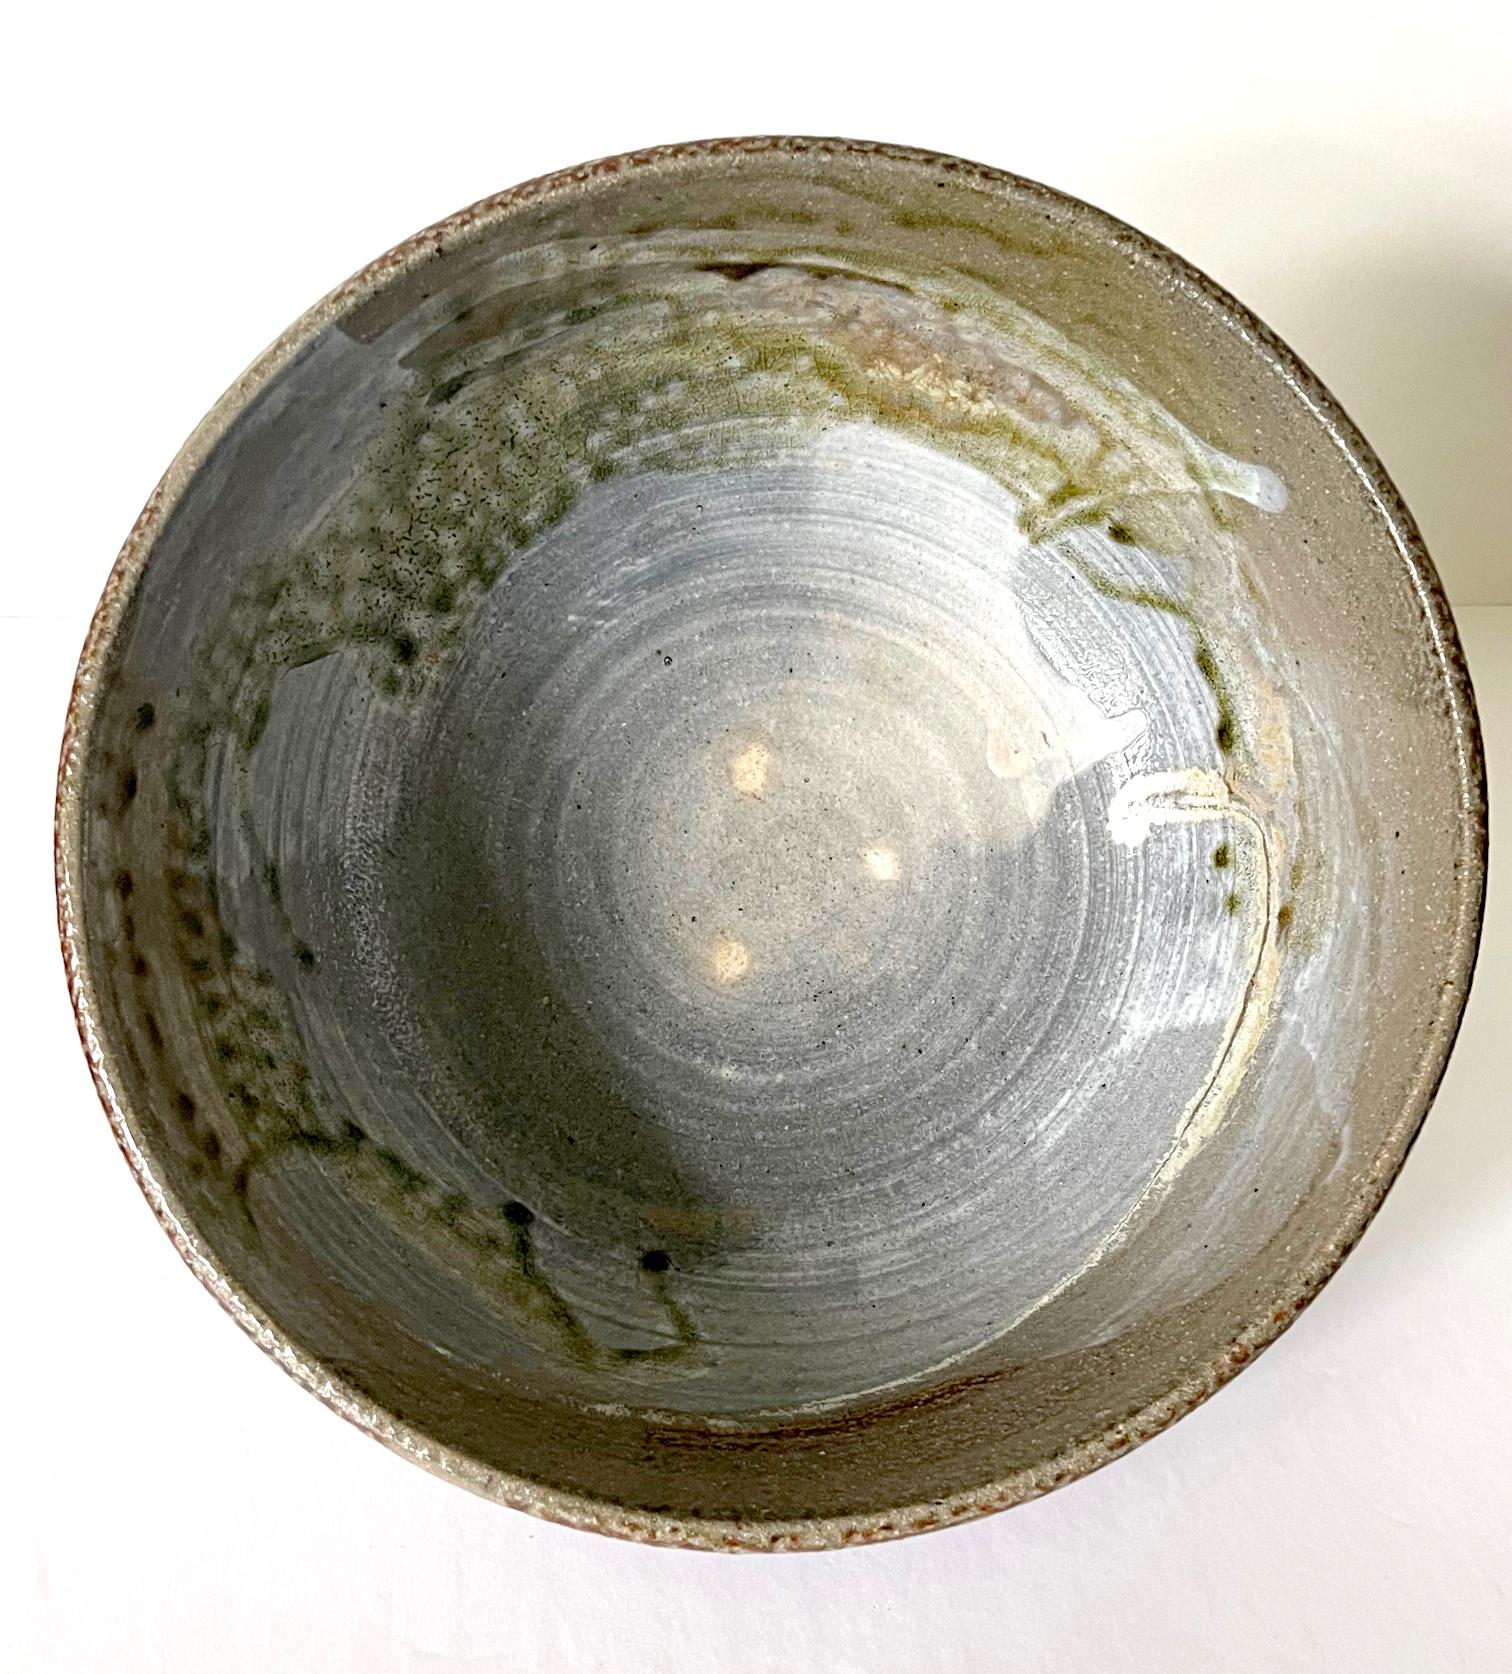 Un grand bol en céramique de l'artiste américano-japonaise Toshiko Takaezu (américaine, 1922 - 2011). La coupe de forme profonde présente un corps robuste à paroi épaisse, soutenu par un anneau de pied rond et court. La surface intérieure présente